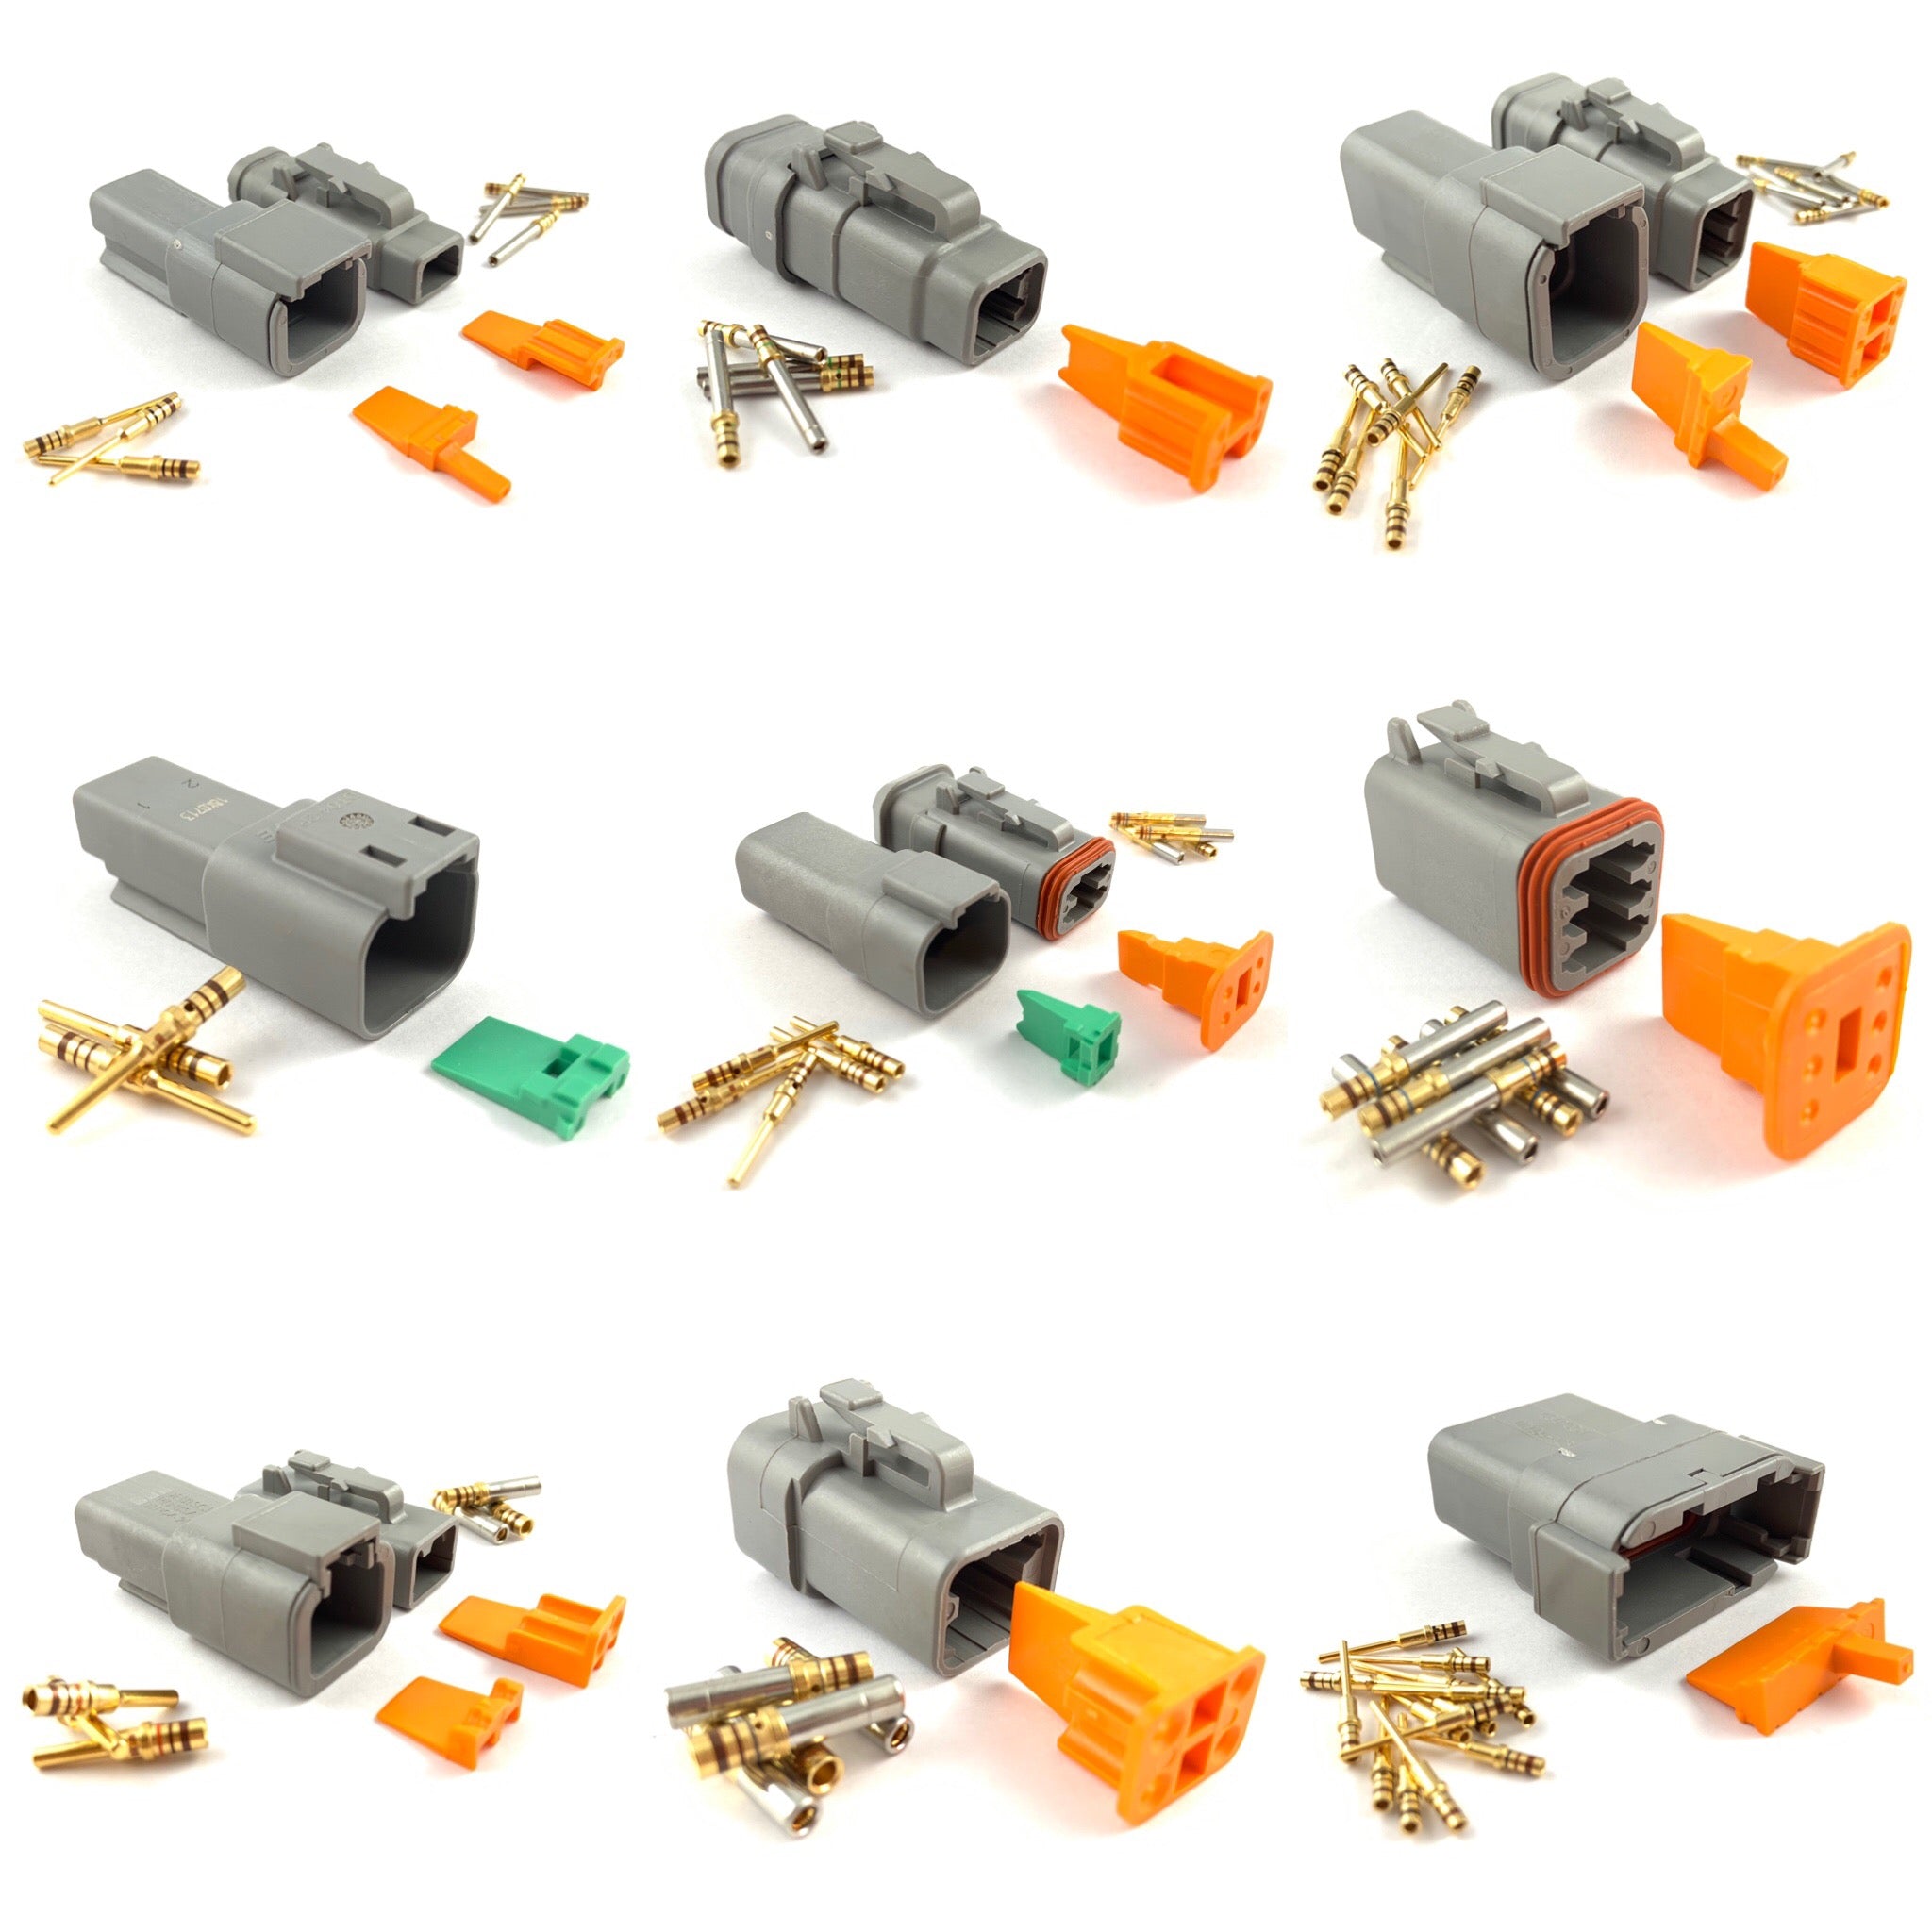 All Deutsch DT Series Connector Kits